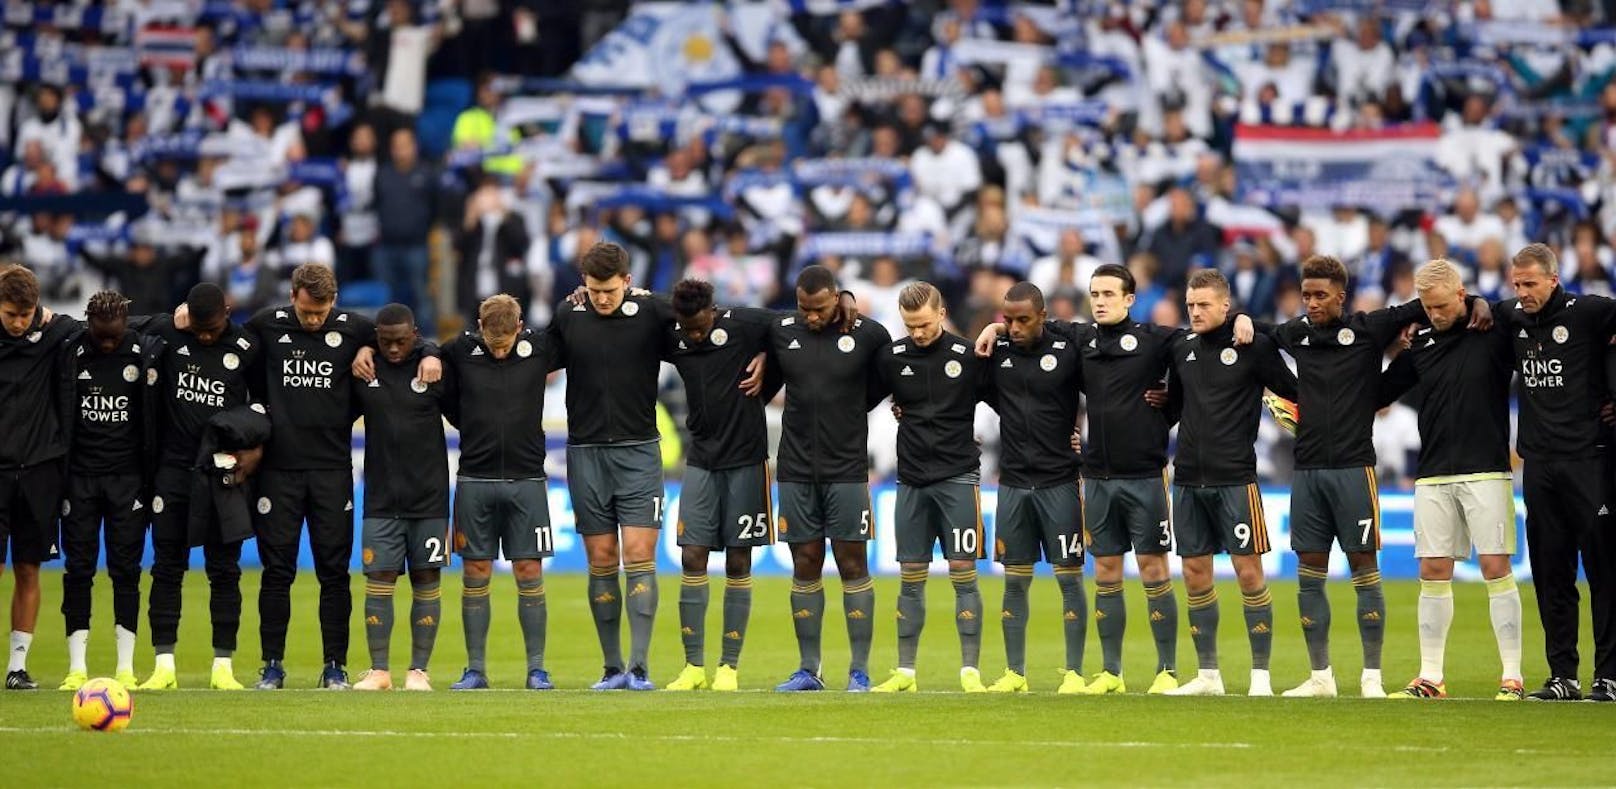 Leicester-Spieler weinen um toten Klub-Besitzer